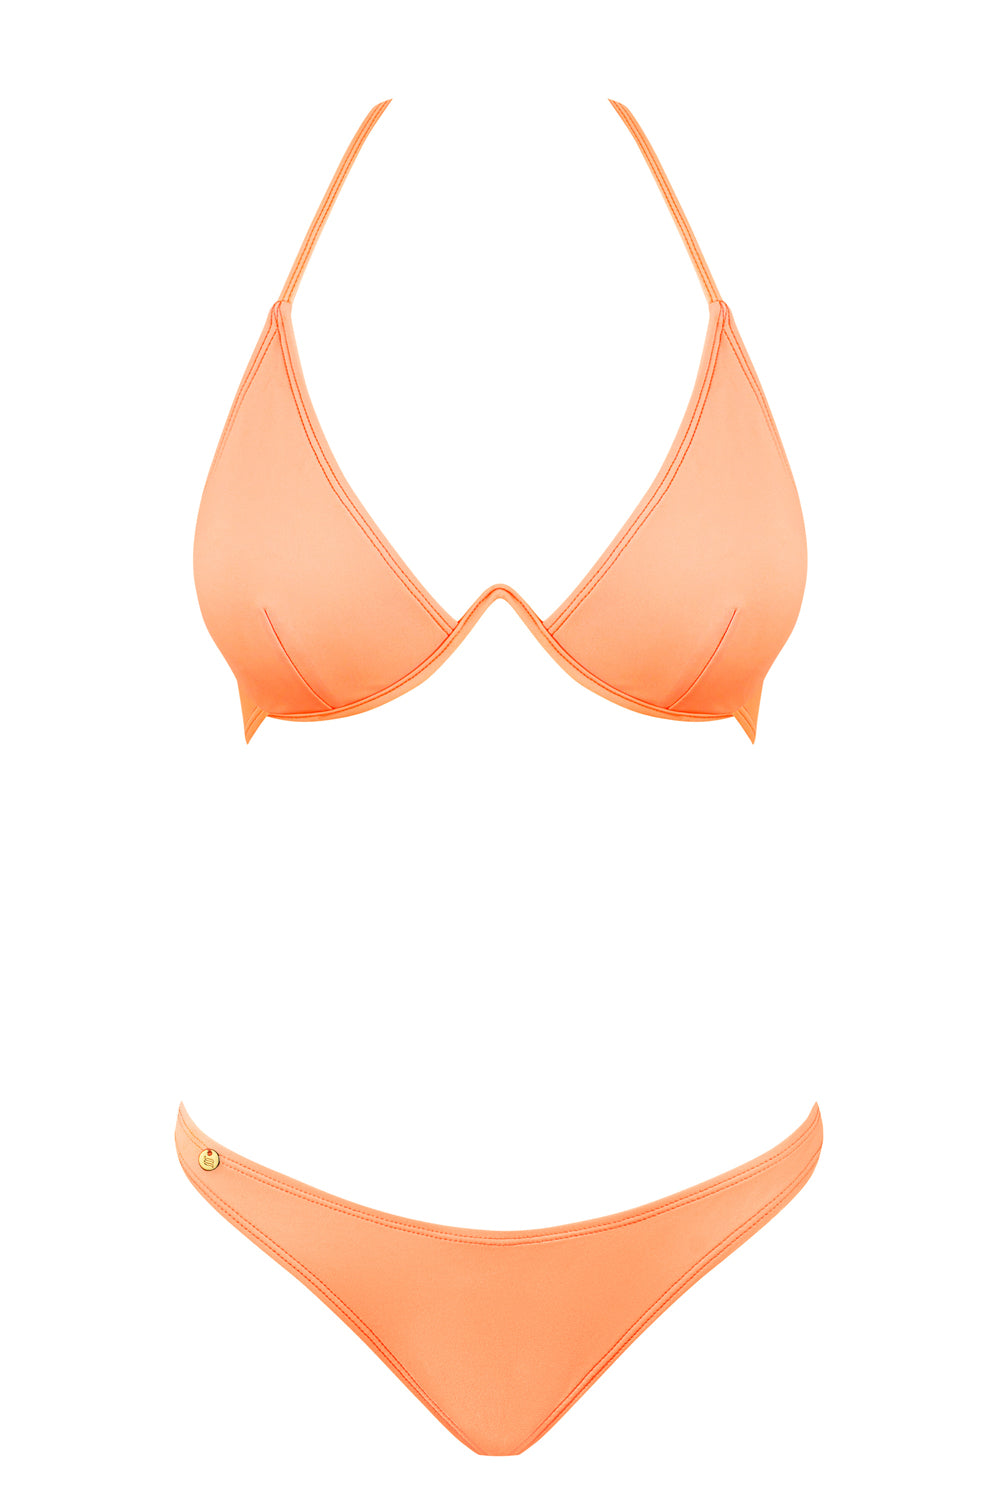 Bügel Bikini in einem sommerlichen Corallton